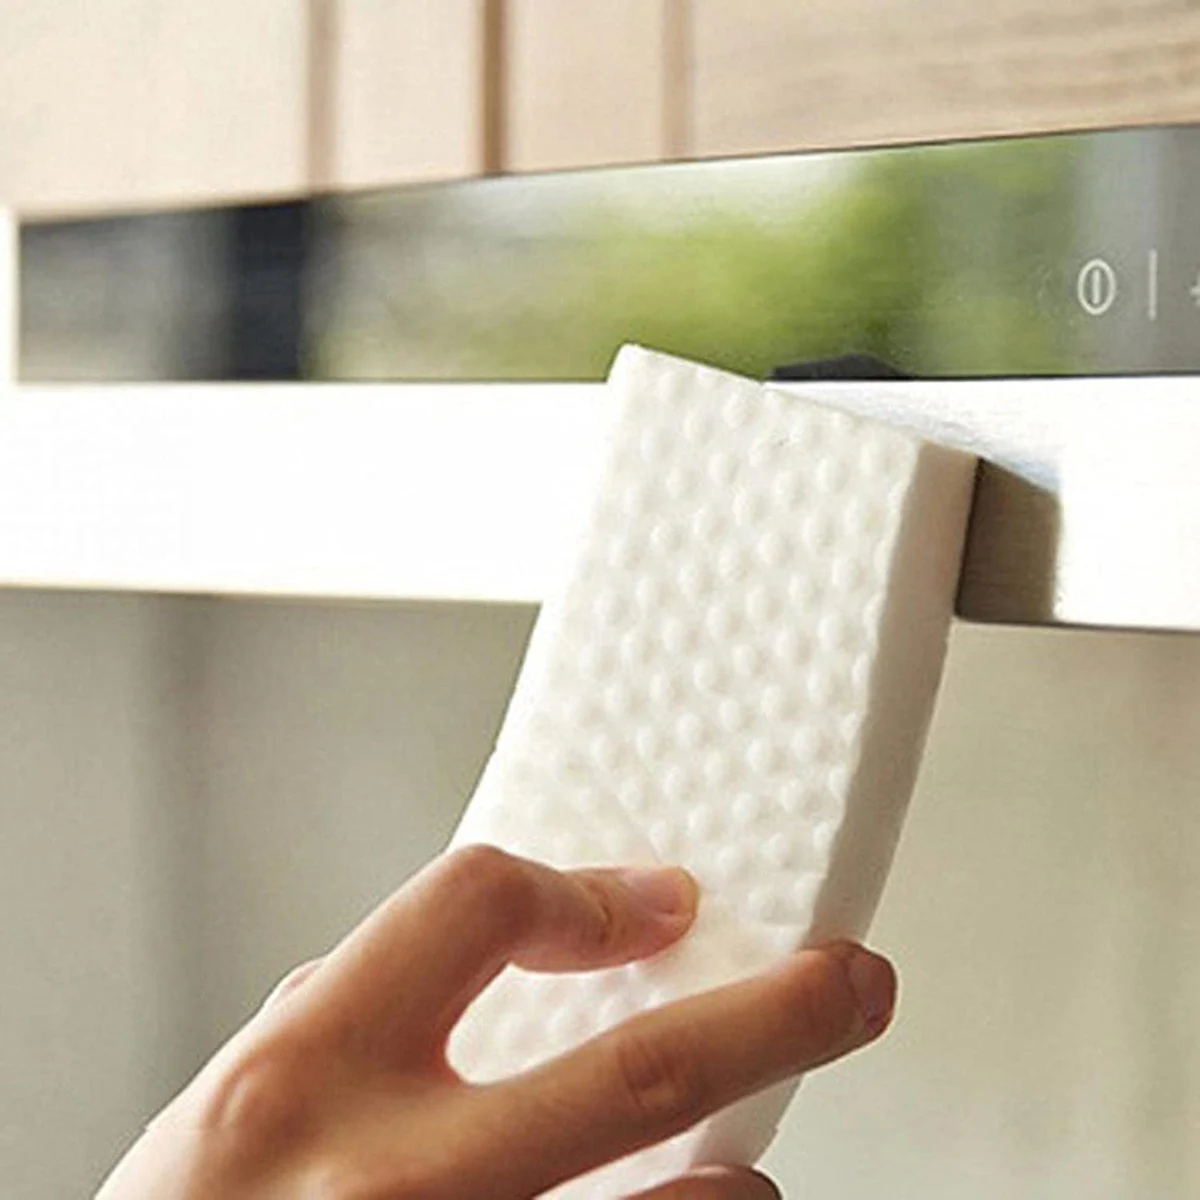 10 Штук волшебной губки-ластика для чистки многофункционального усовершенствованного пеноочистителя Nano Wiper, чистящая прокладка для бытовой уборки - 5